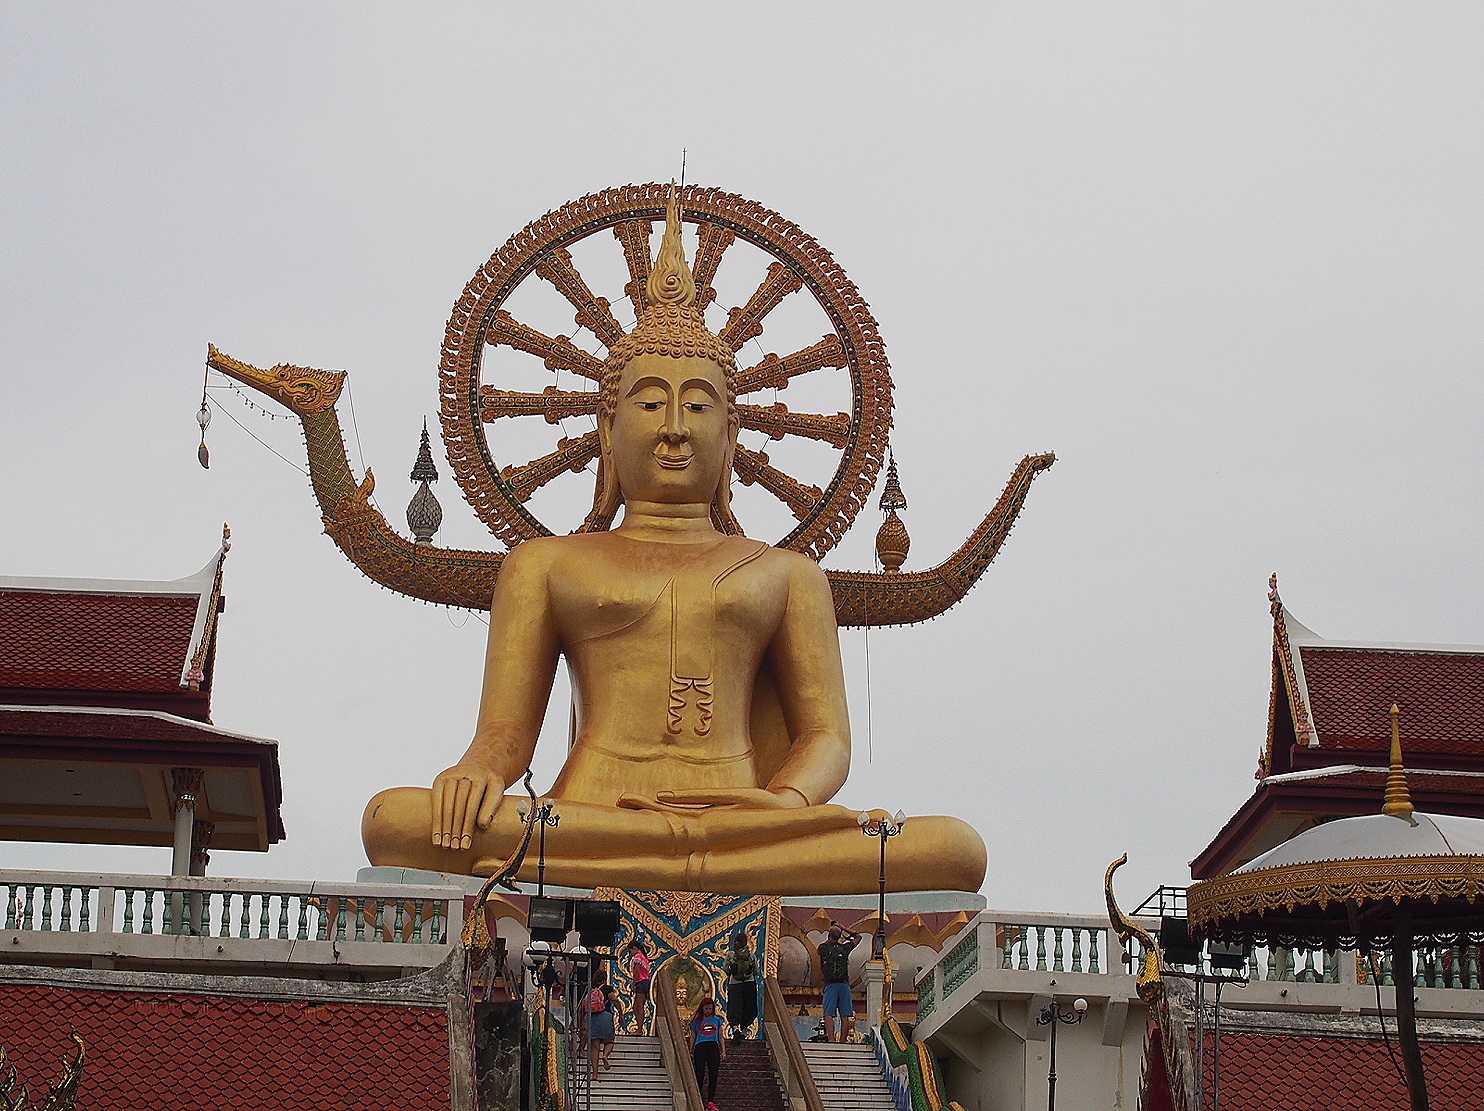 'Big Buddha' on Koh Samui 